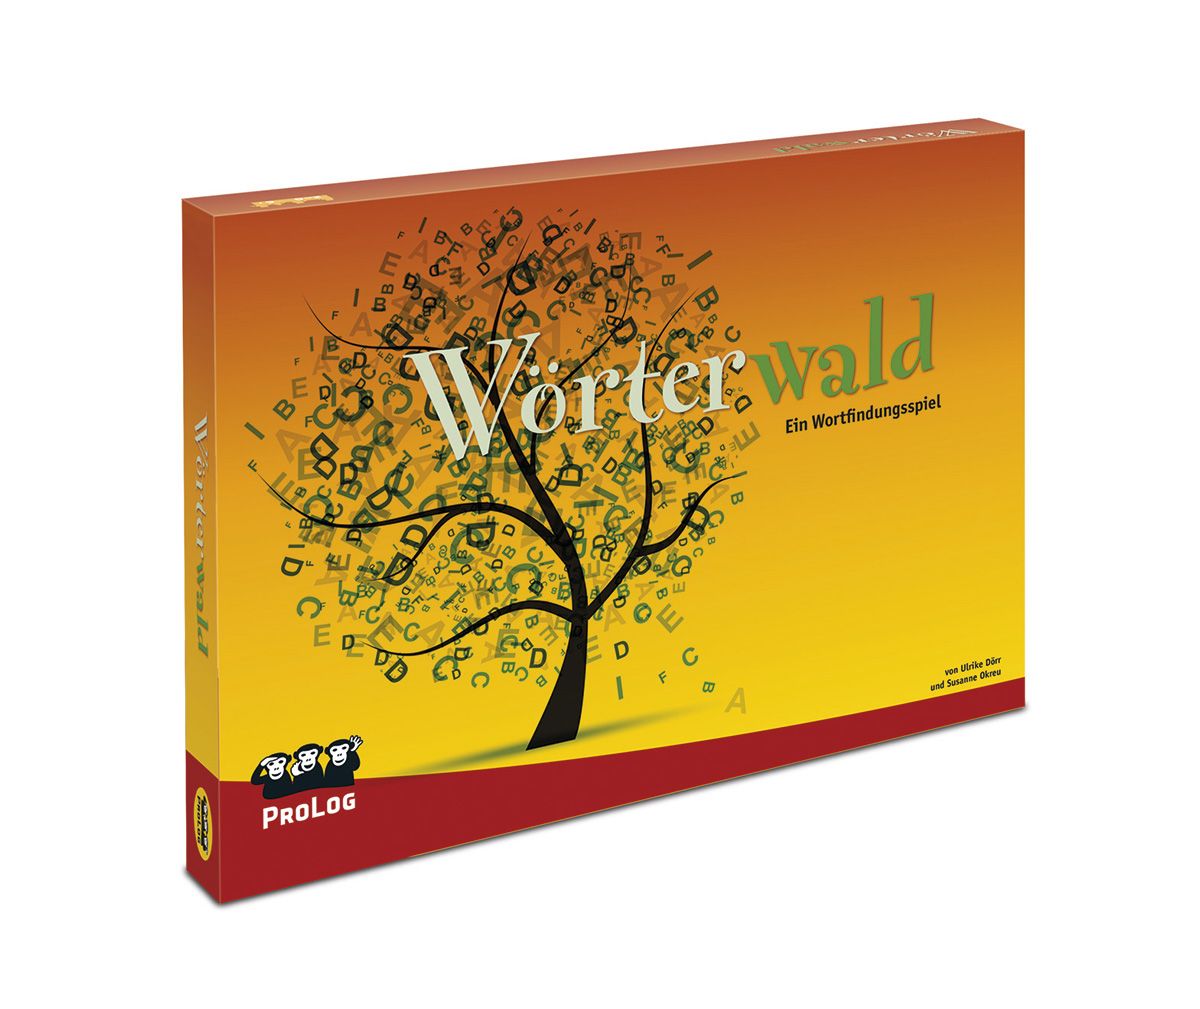 Wörterwald-Hauptspiel: Wortfindung